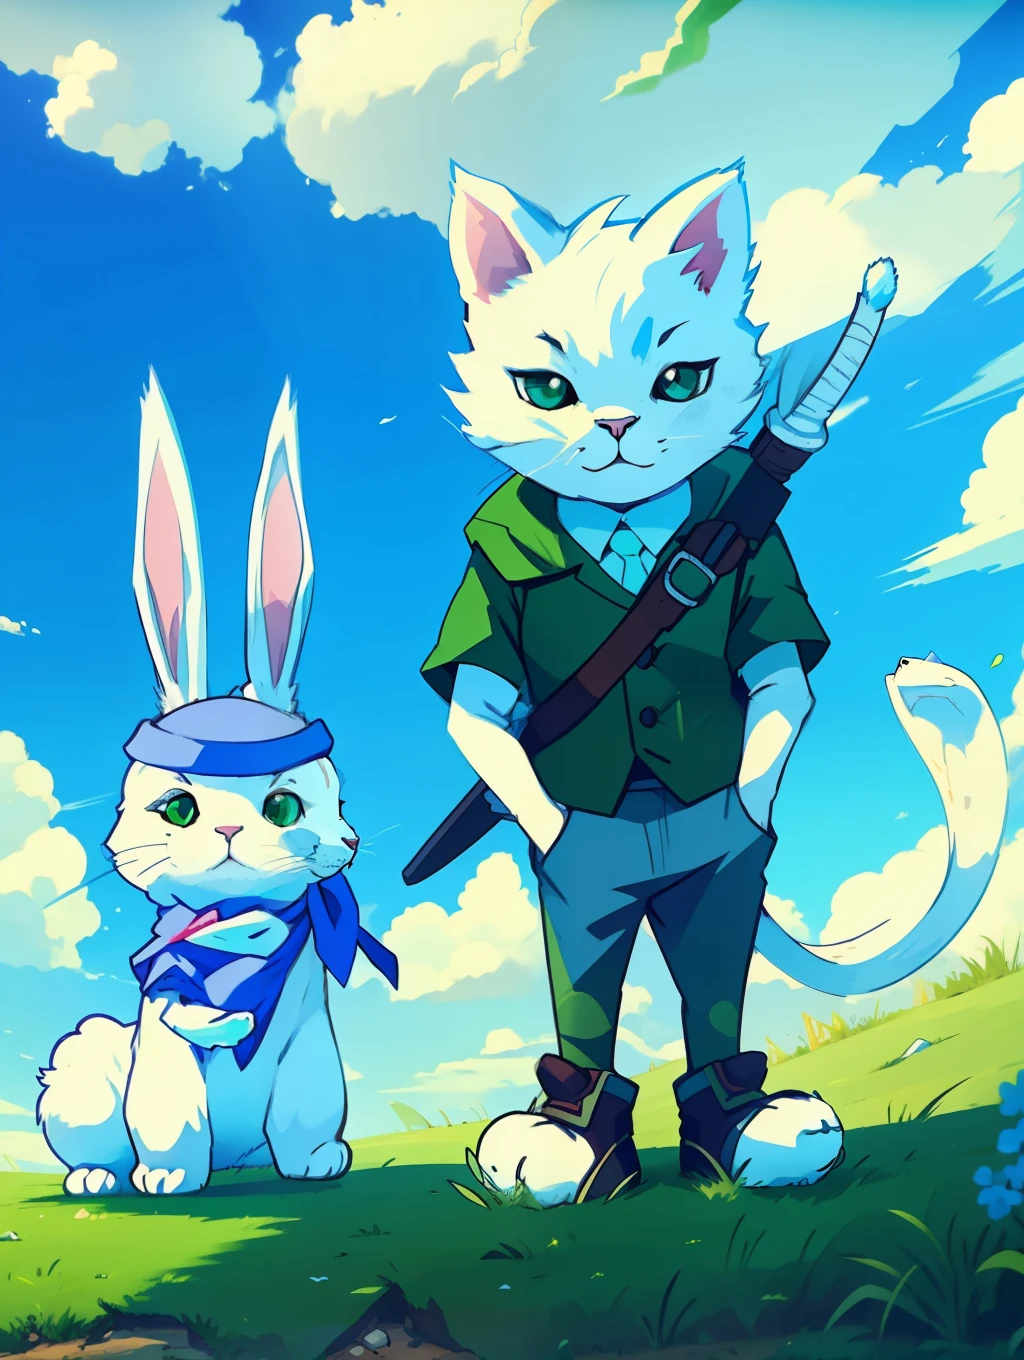 兩個字符, 一隻白貓和一隻兔子, 綠色草坪和藍天的背景, 卡通風格, 明確的對抗, 明亮的色彩和, 魅力人物